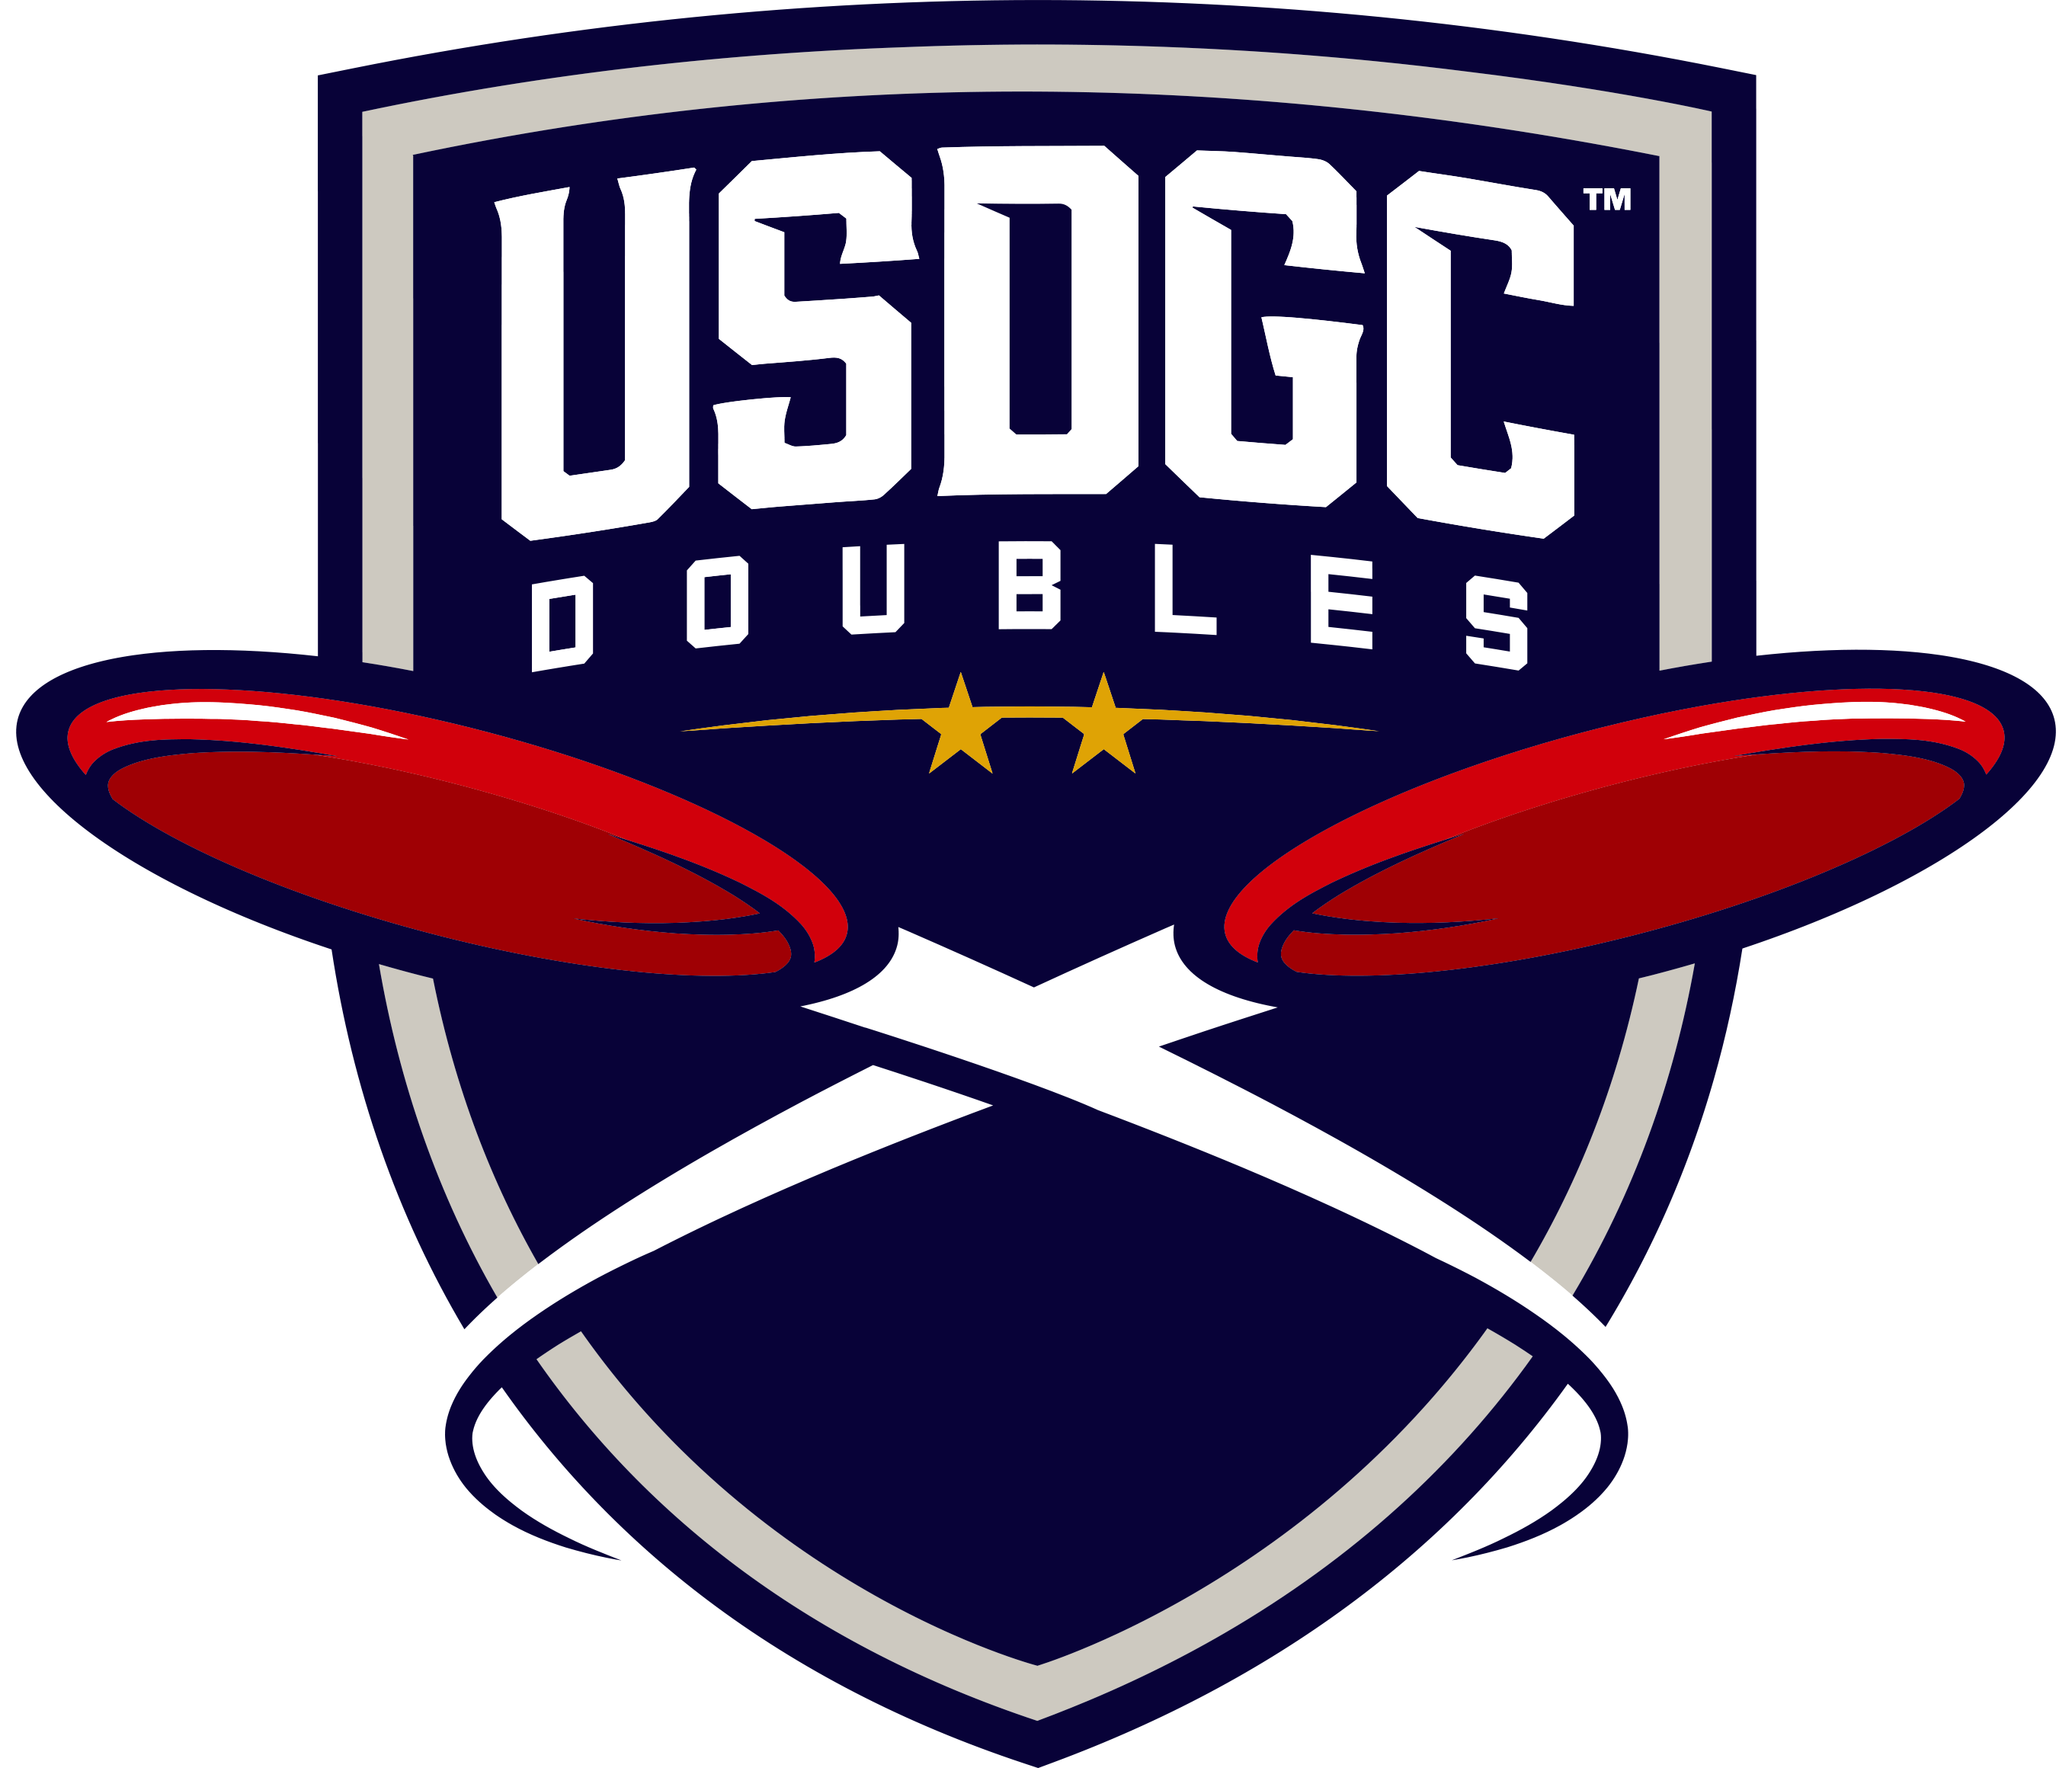 USDGC Doubles Logo